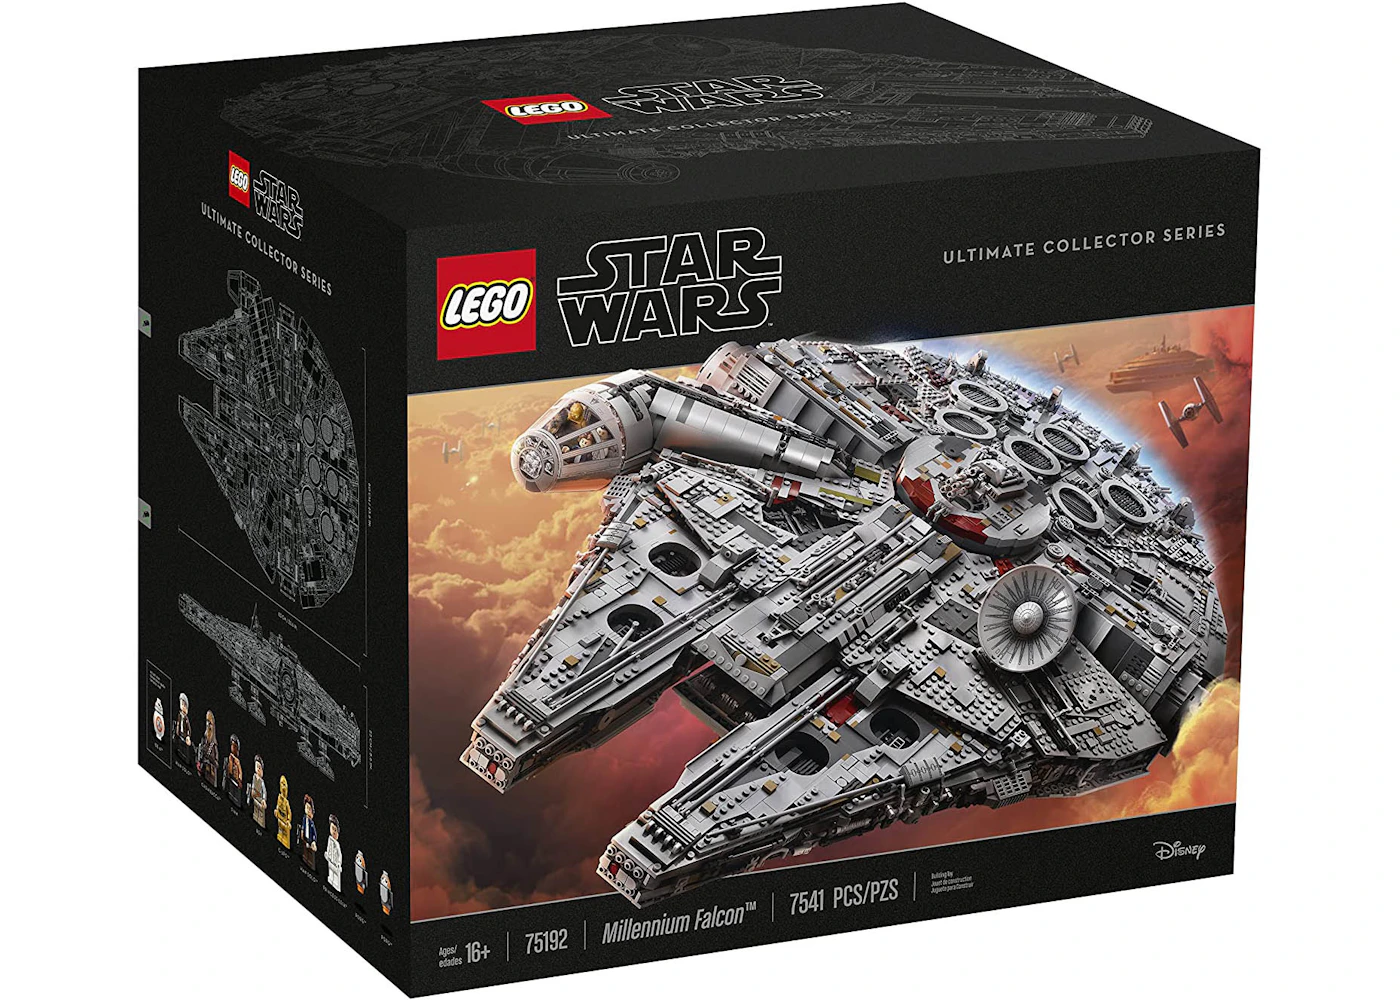 Stå op i stedet oxiderer rytme LEGO Star Wars Millennium Falcon Ultimate Collector Series Set 75192 - US